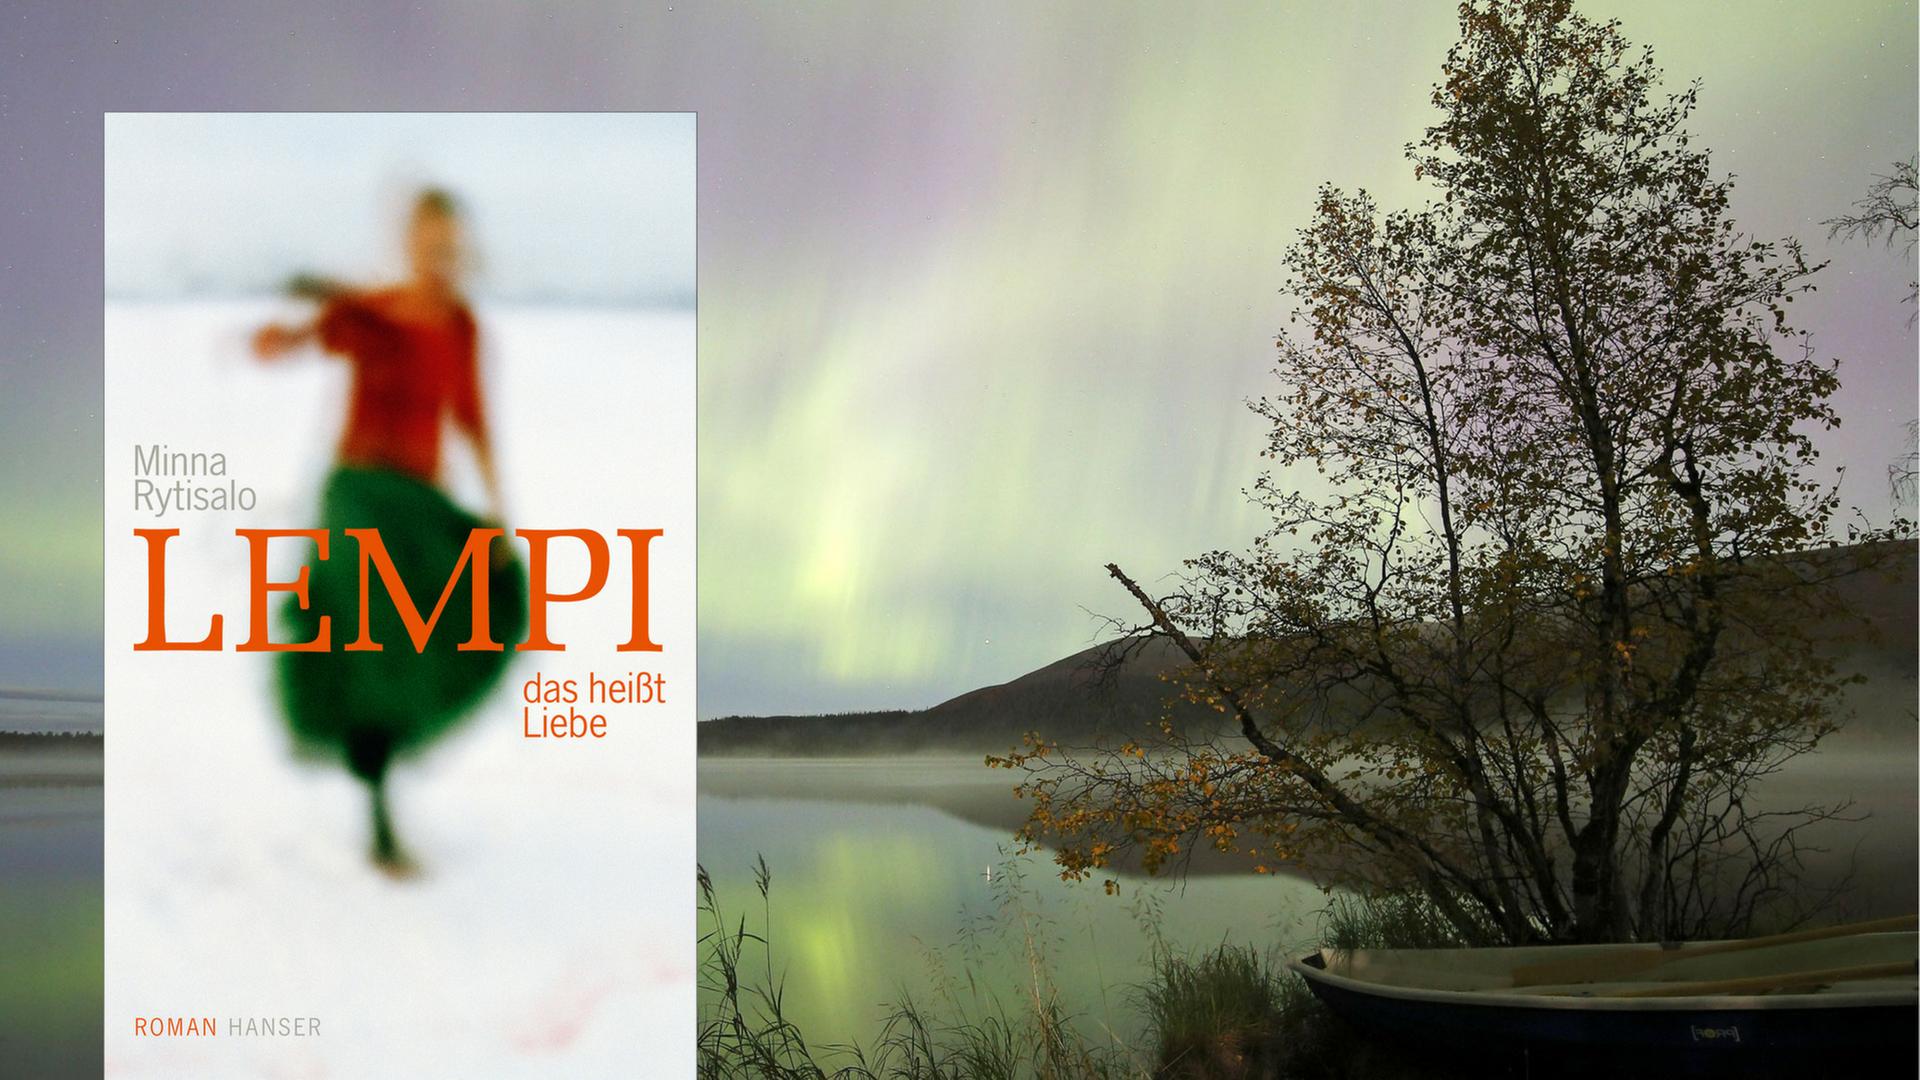 Buchcover: Minna Rytisalo: "Lempi, das heißt Liebe" und Nordlichter in Finnland